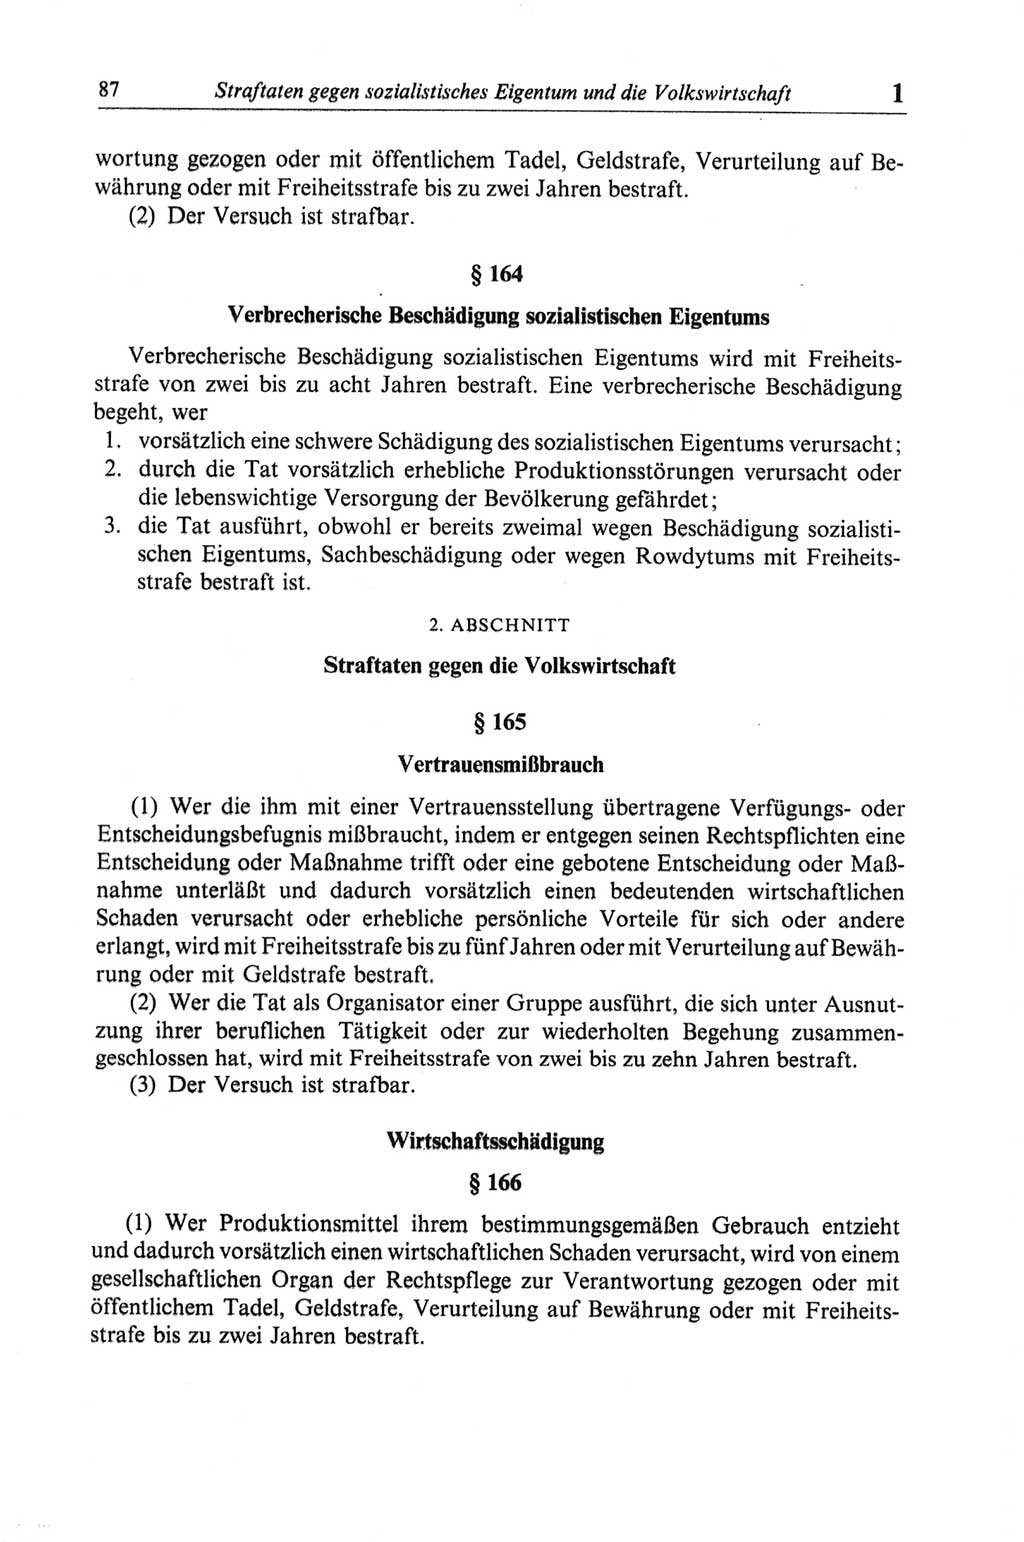 Strafgesetzbuch (StGB) der Deutschen Demokratischen Republik (DDR) und angrenzende Gesetze und Bestimmungen 1968, Seite 87 (StGB Ges. Best. DDR 1968, S. 87)